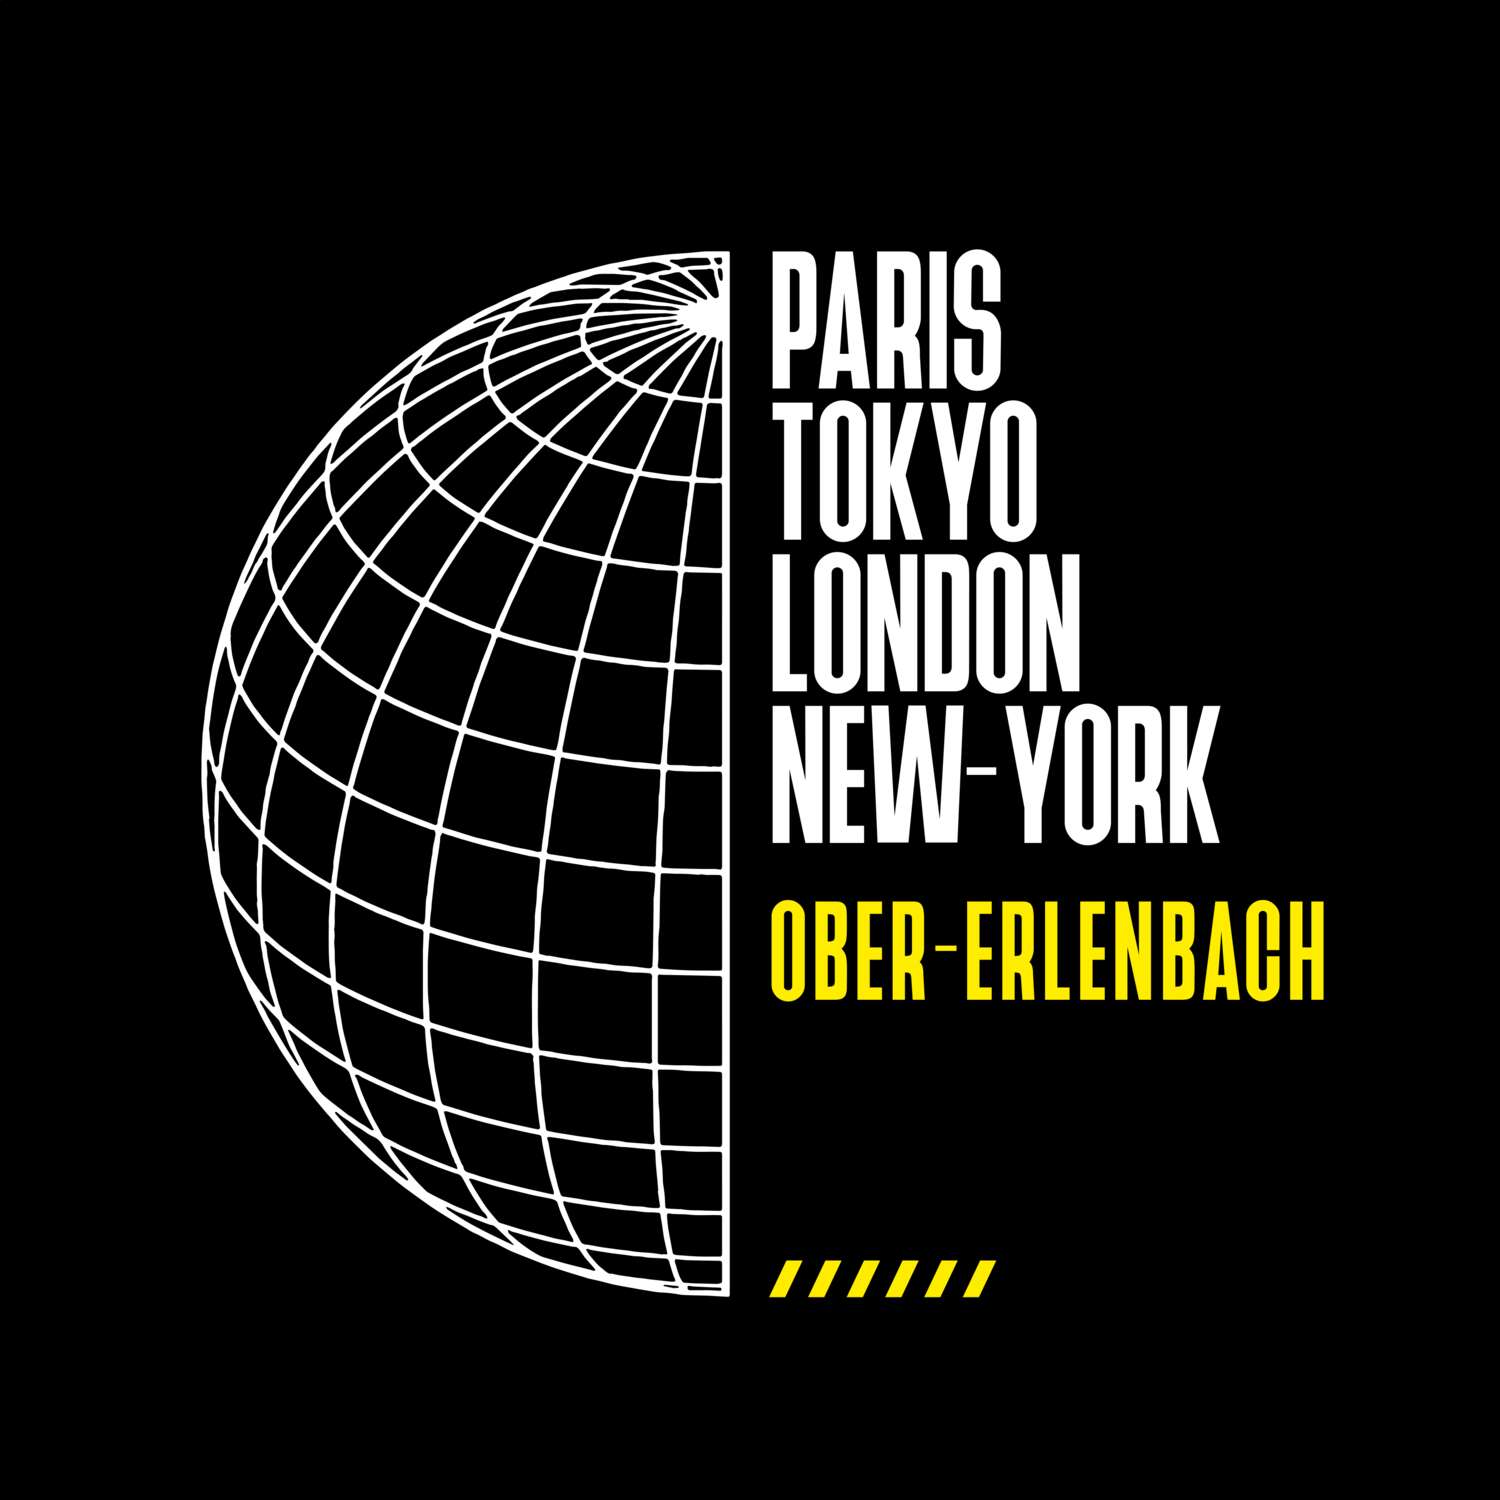 Ober-Erlenbach T-Shirt »Paris Tokyo London«